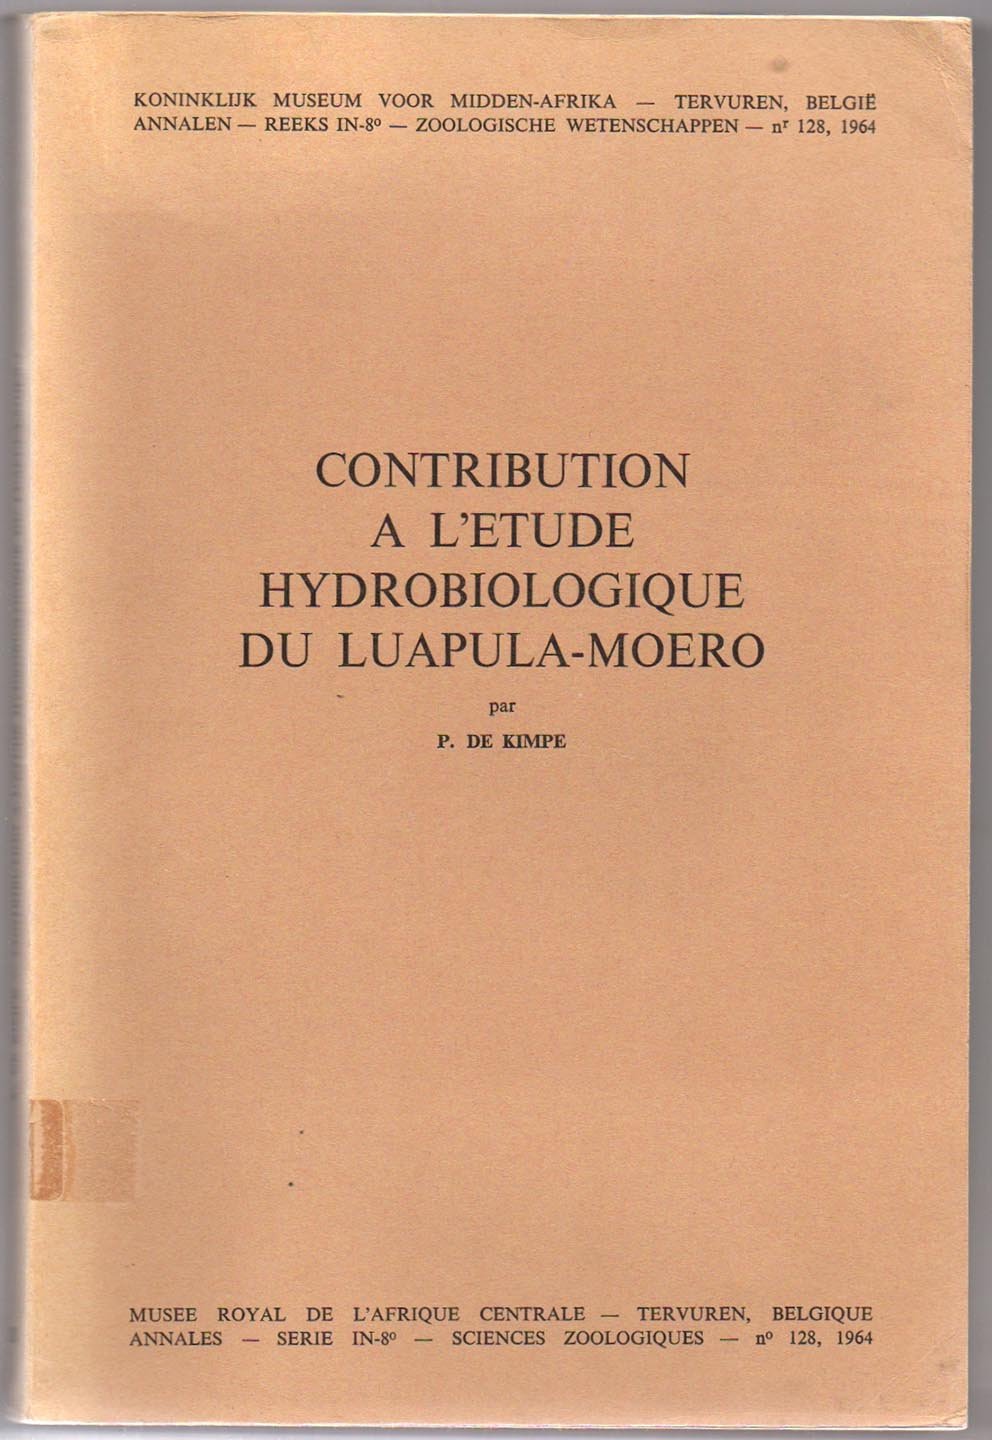 Contribution a L'Etude Hydrobiologique du Luapula-Moero